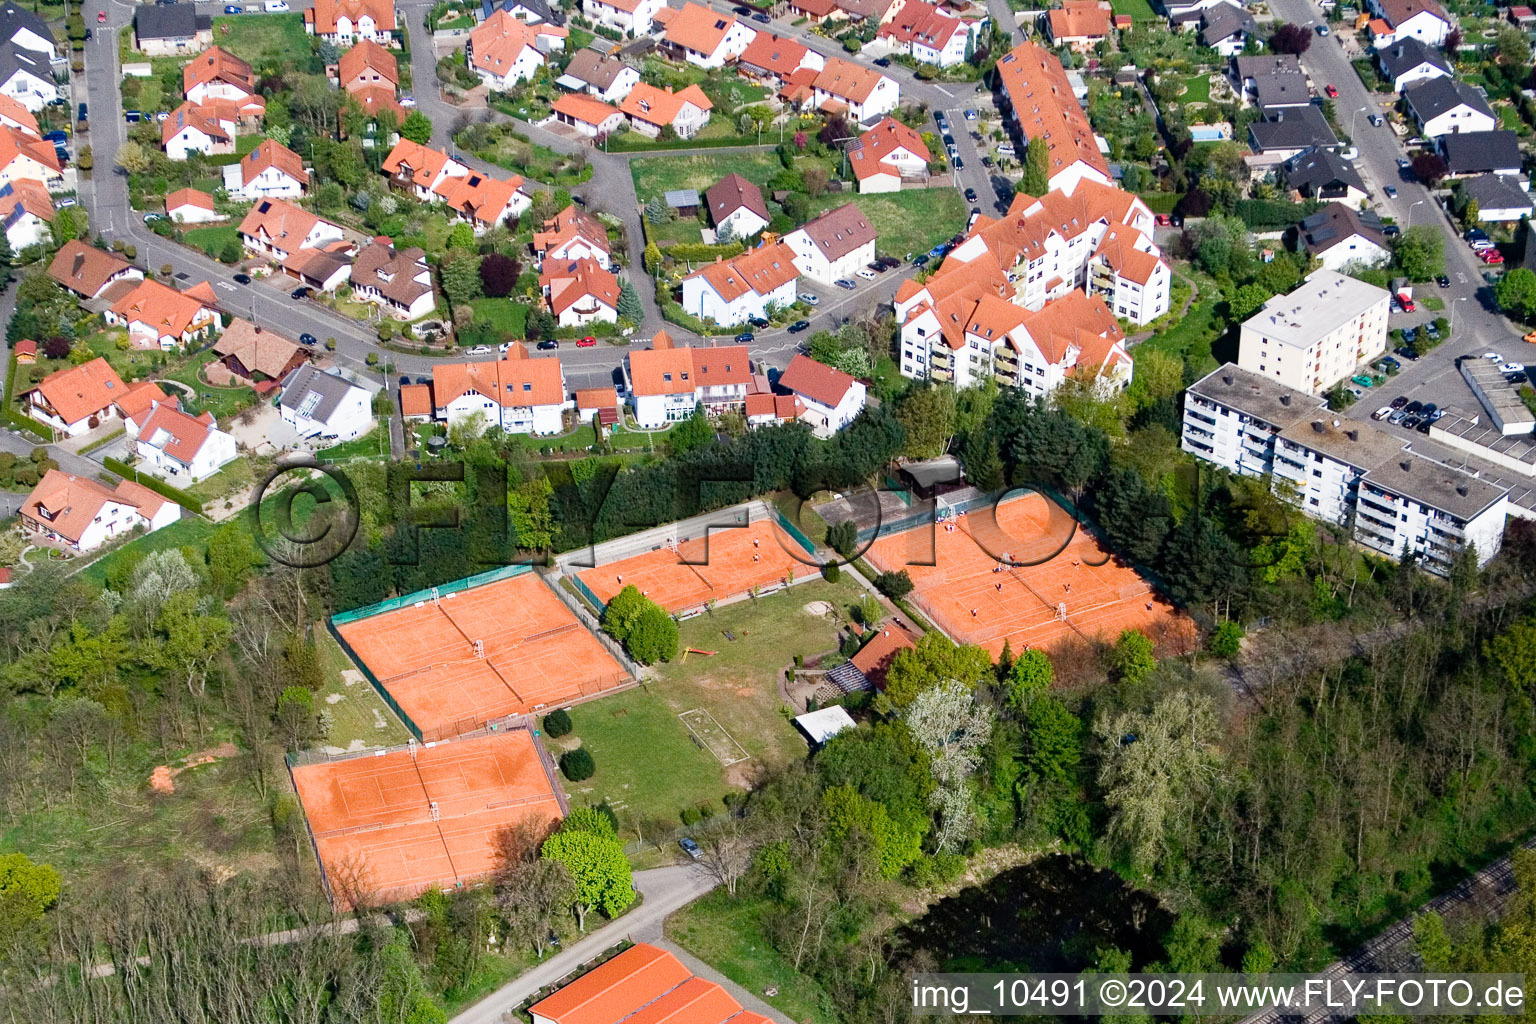 Tennisclub in Jockgrim im Bundesland Rheinland-Pfalz, Deutschland von oben gesehen